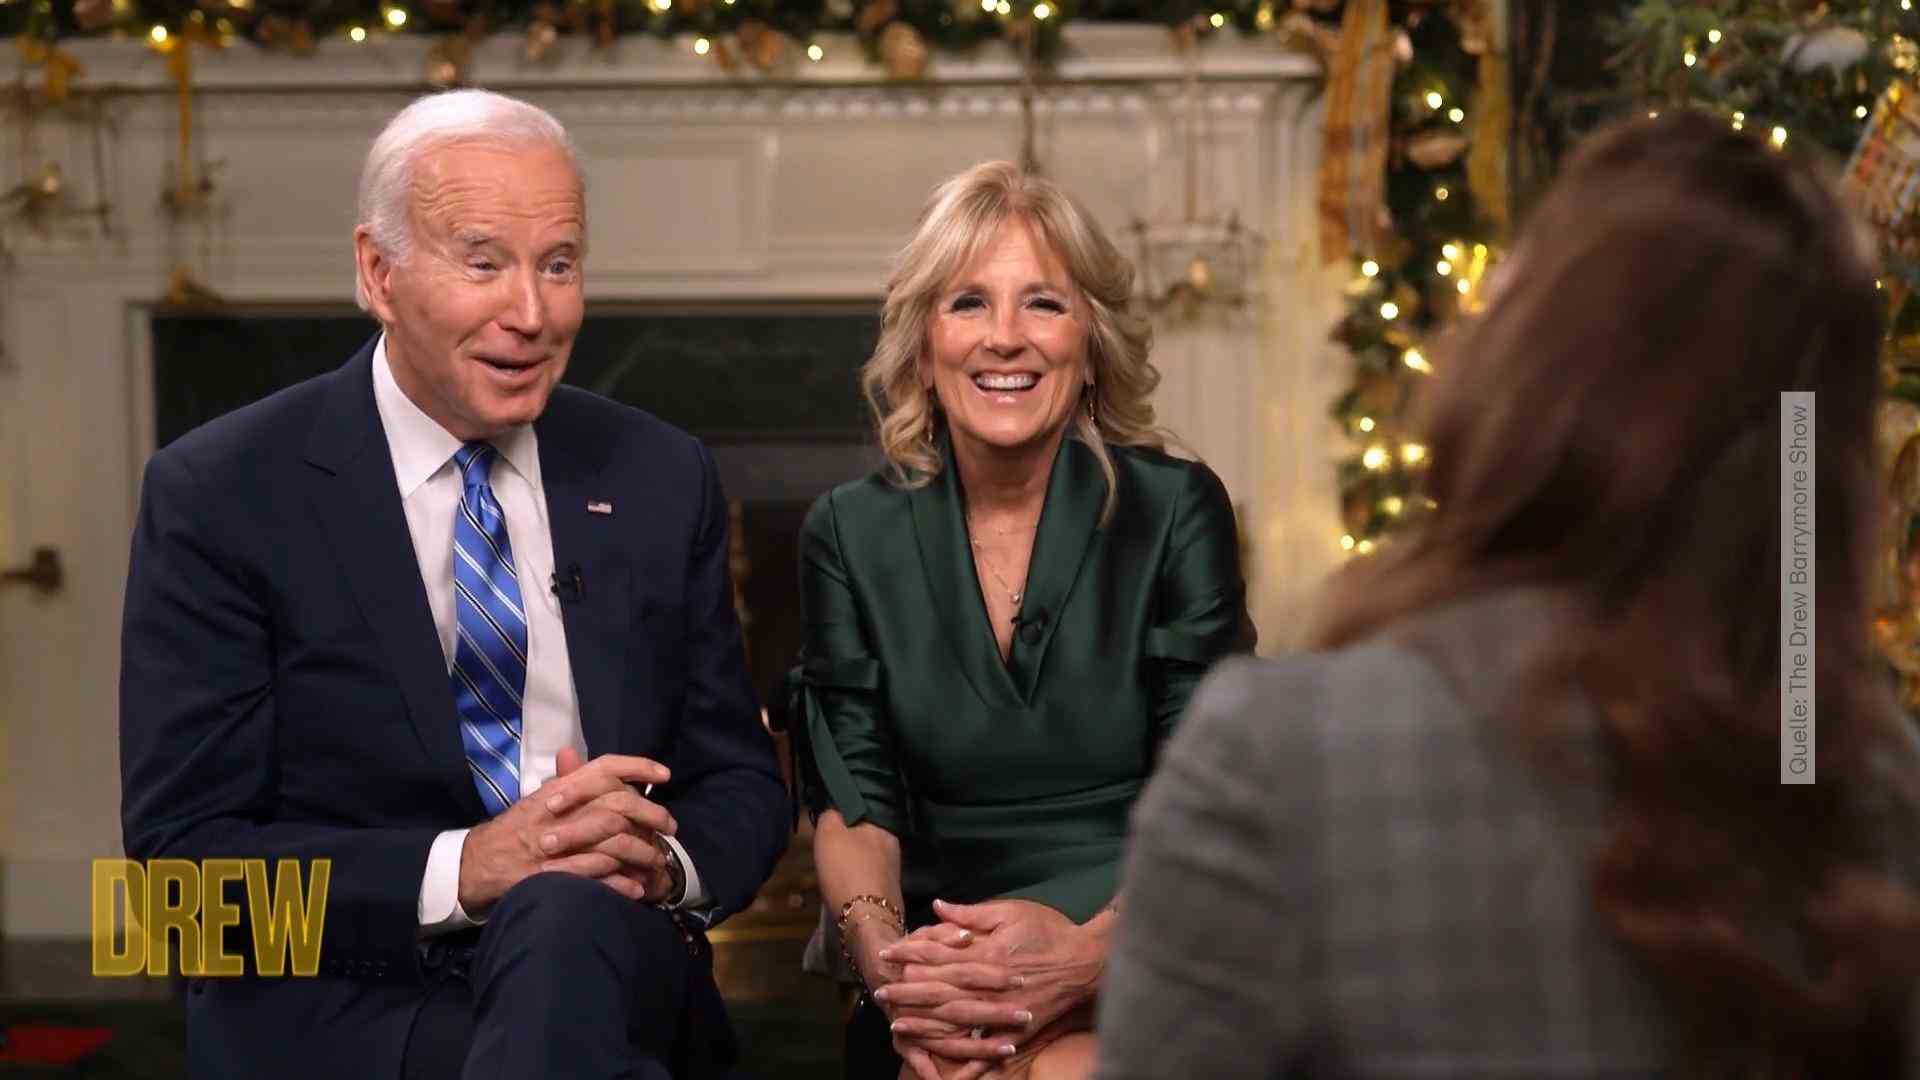 Joe Biden raves about his Jill love interview